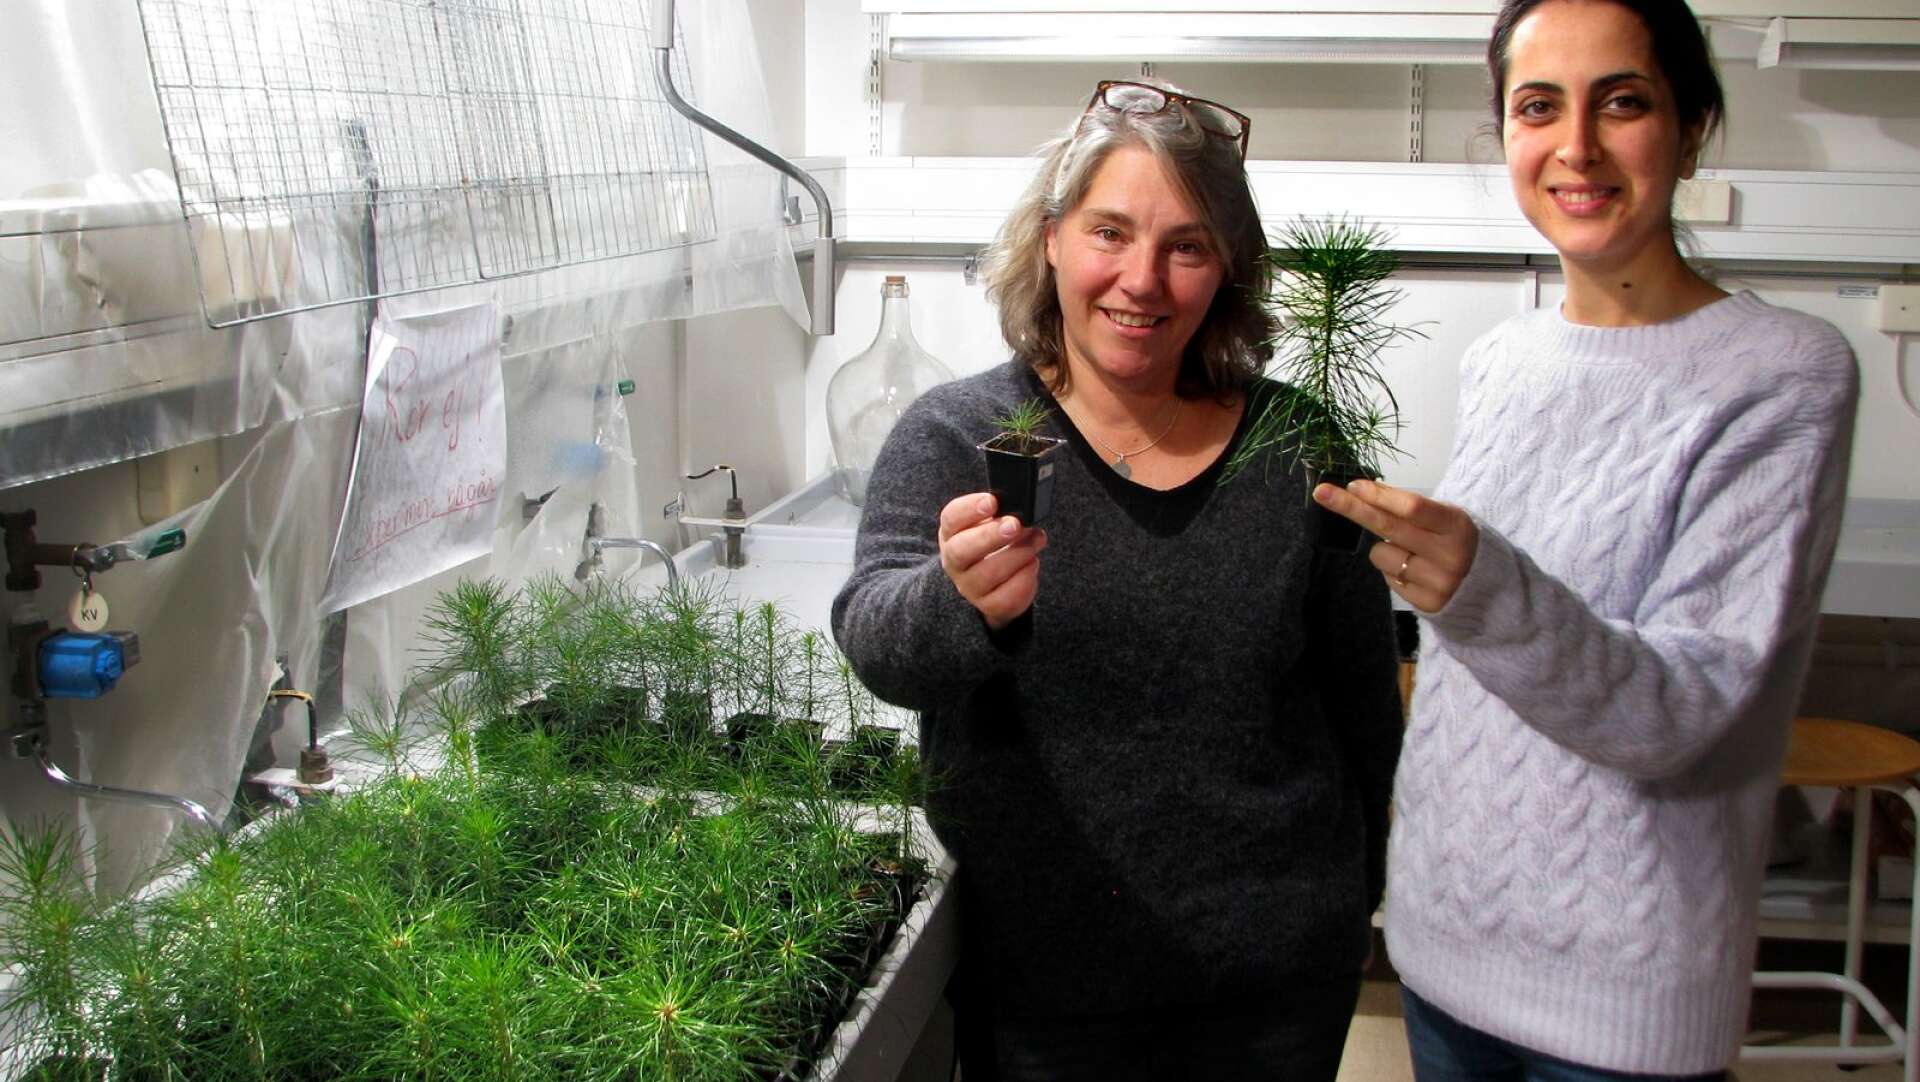 Här kan man se skillnaden mellan tallplantor som växer på traditionellt sätt och plantor som fått pulver från biokol, säger forskaren Maria Sandberg tillsammans med gästforskaren, Samieh Eskandari, från Austrailien.